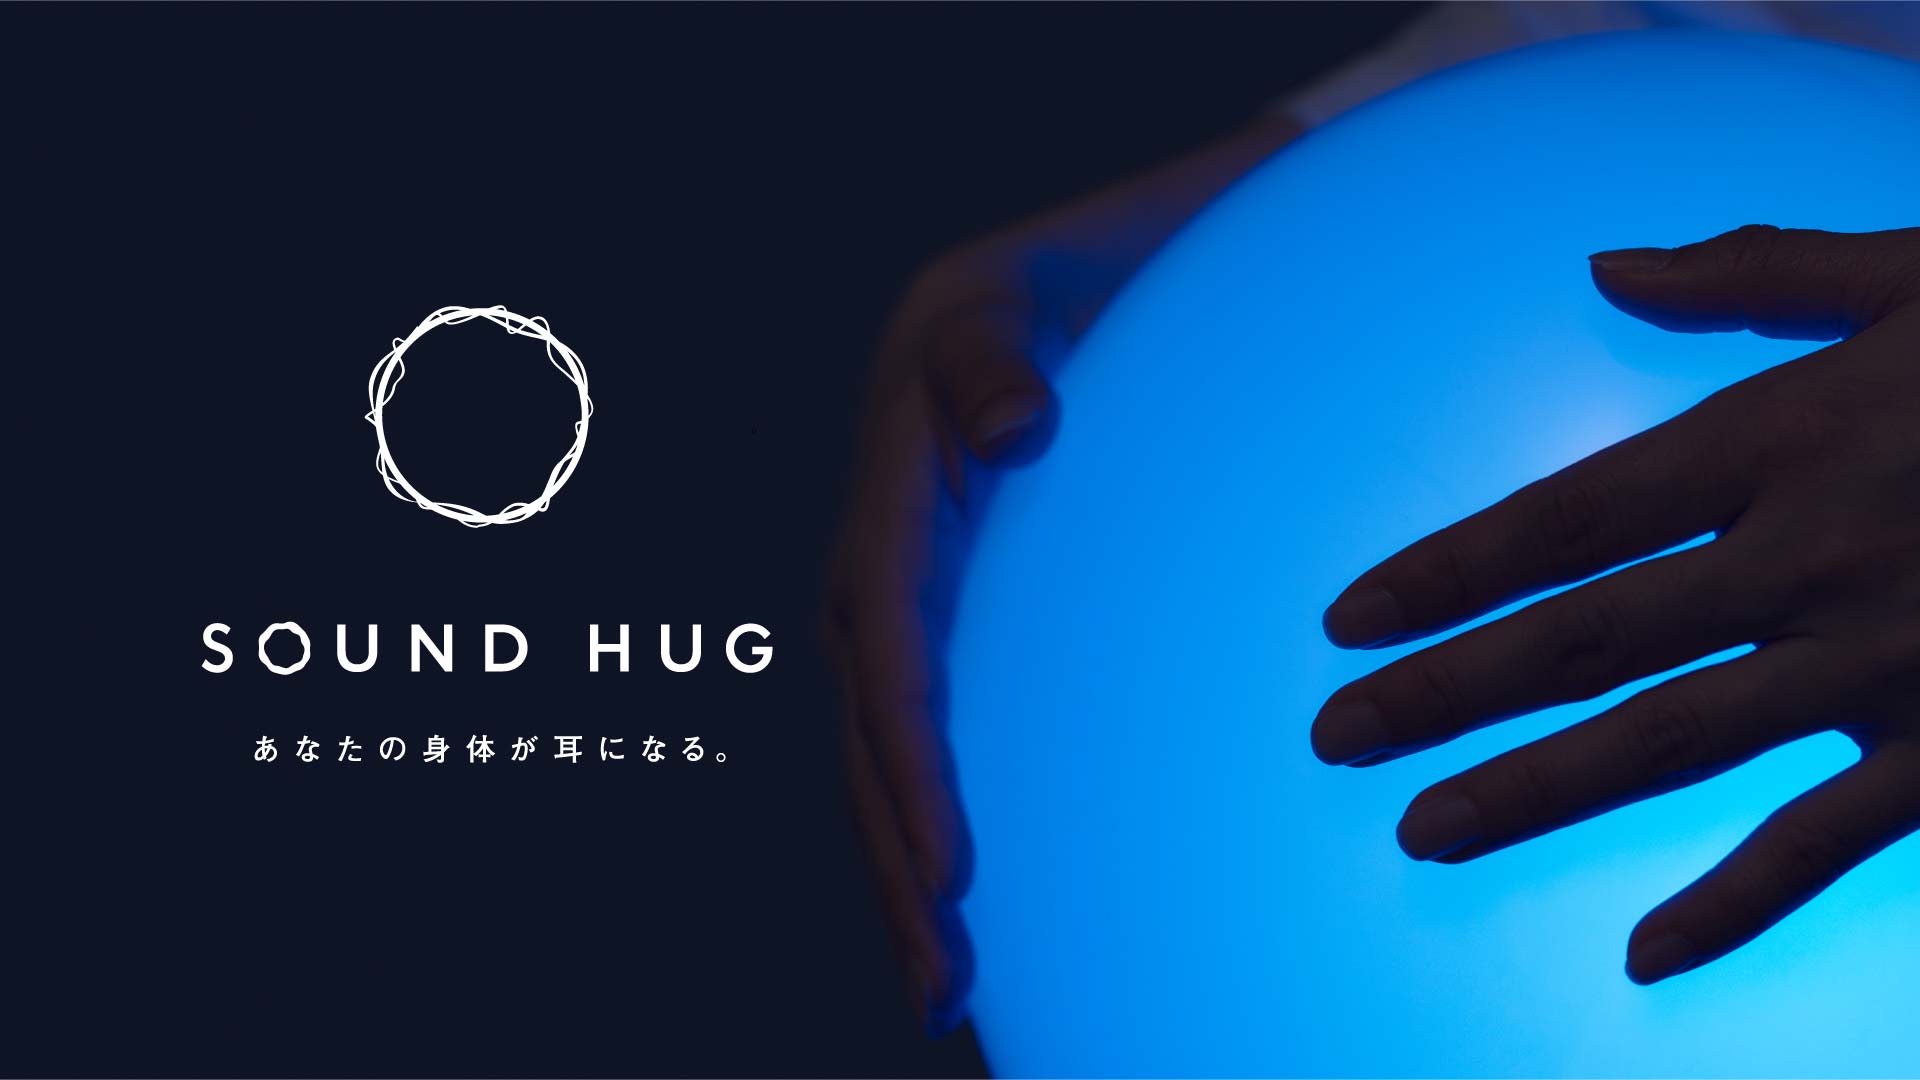 あらゆる人に音楽を届けるためのデバイス「SOUND HUG™」の 法人向けレンタルサービス開始 <br><br>〜博報堂と落合陽一氏率いるピクシーダストテクノロジーズで共同開発〜